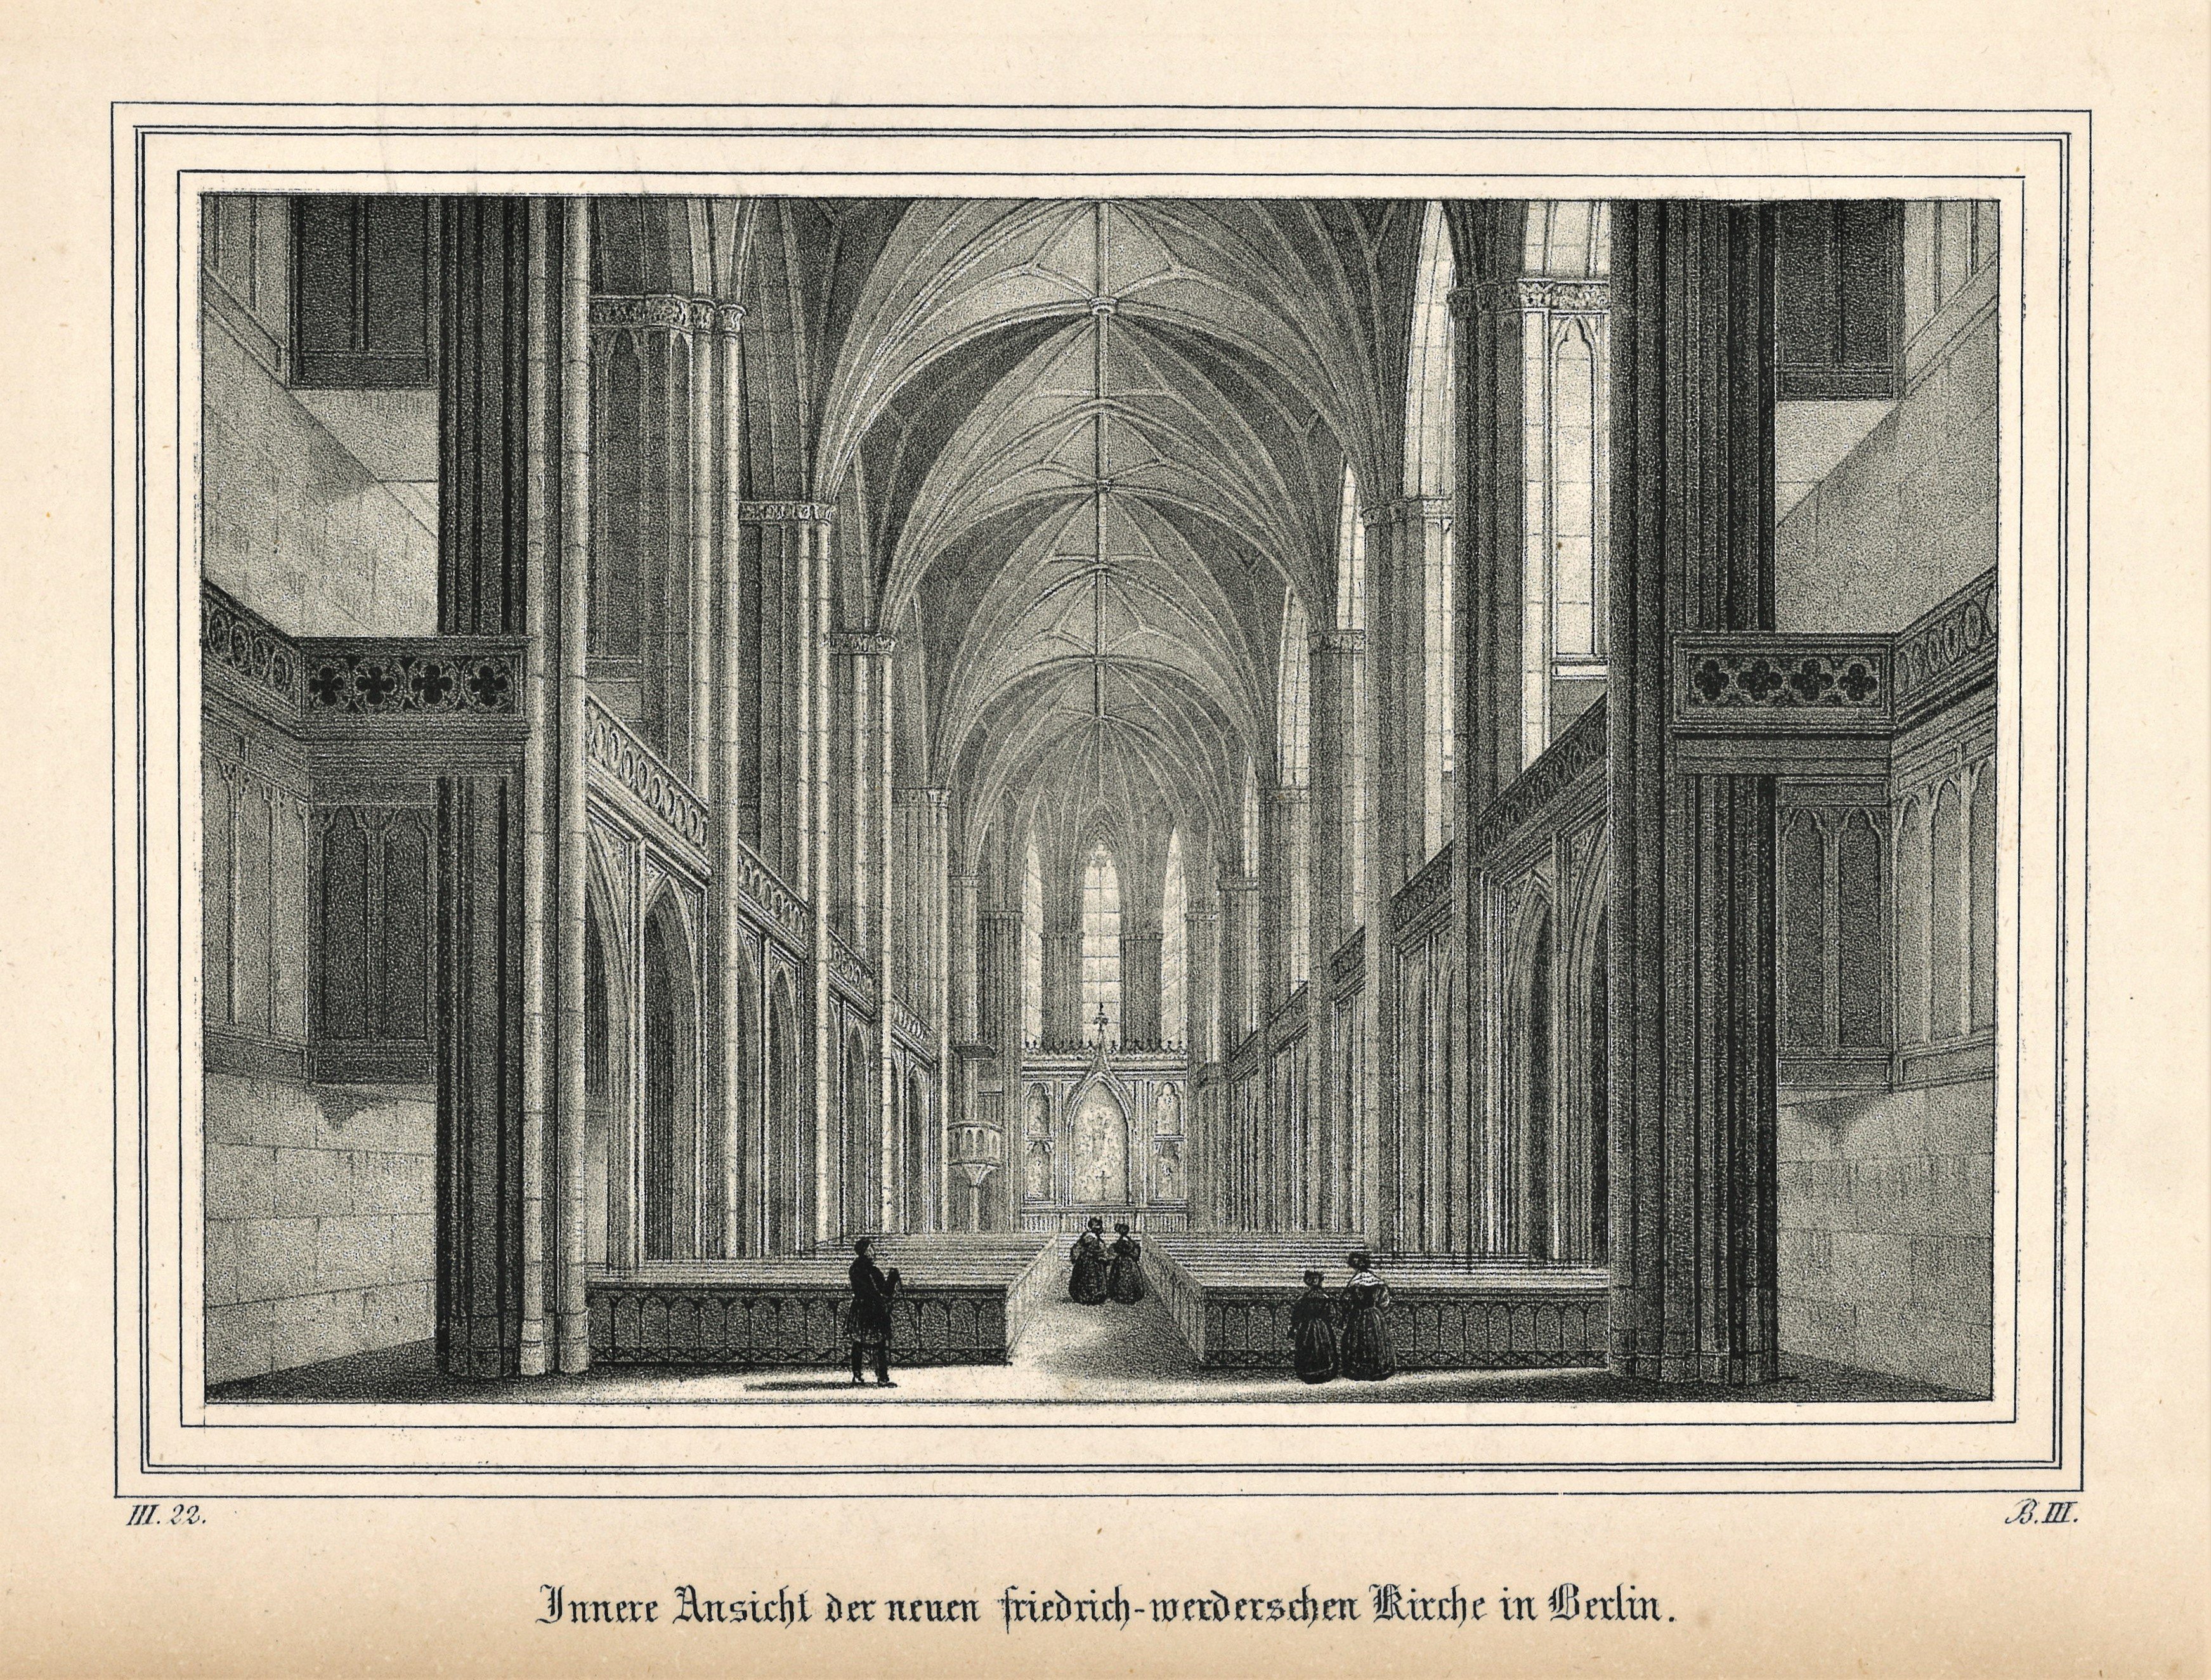 Berlin-Mitte: Friedrichswerdersche Kirche, Inneres (Landesgeschichtliche Vereinigung für die Mark Brandenburg e.V., Archiv CC BY)